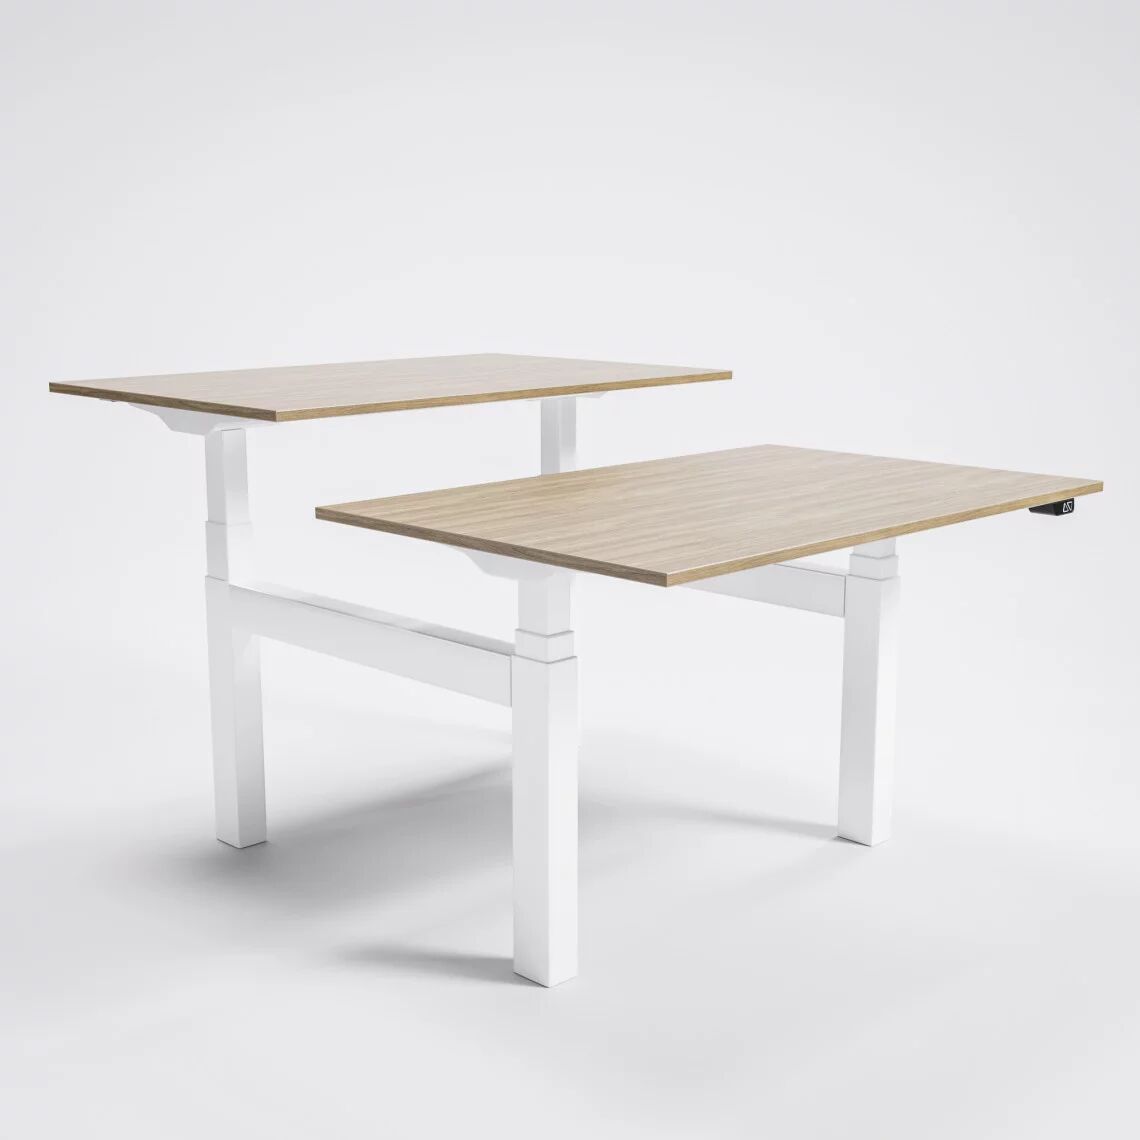 Brizley of Scandinavia Höhenverstellbarer Doppel-Schreibtisch AdjusTable Bench PRO6, Tischplatte Eiche, Stativ Weiß, Größe 200x80 cm